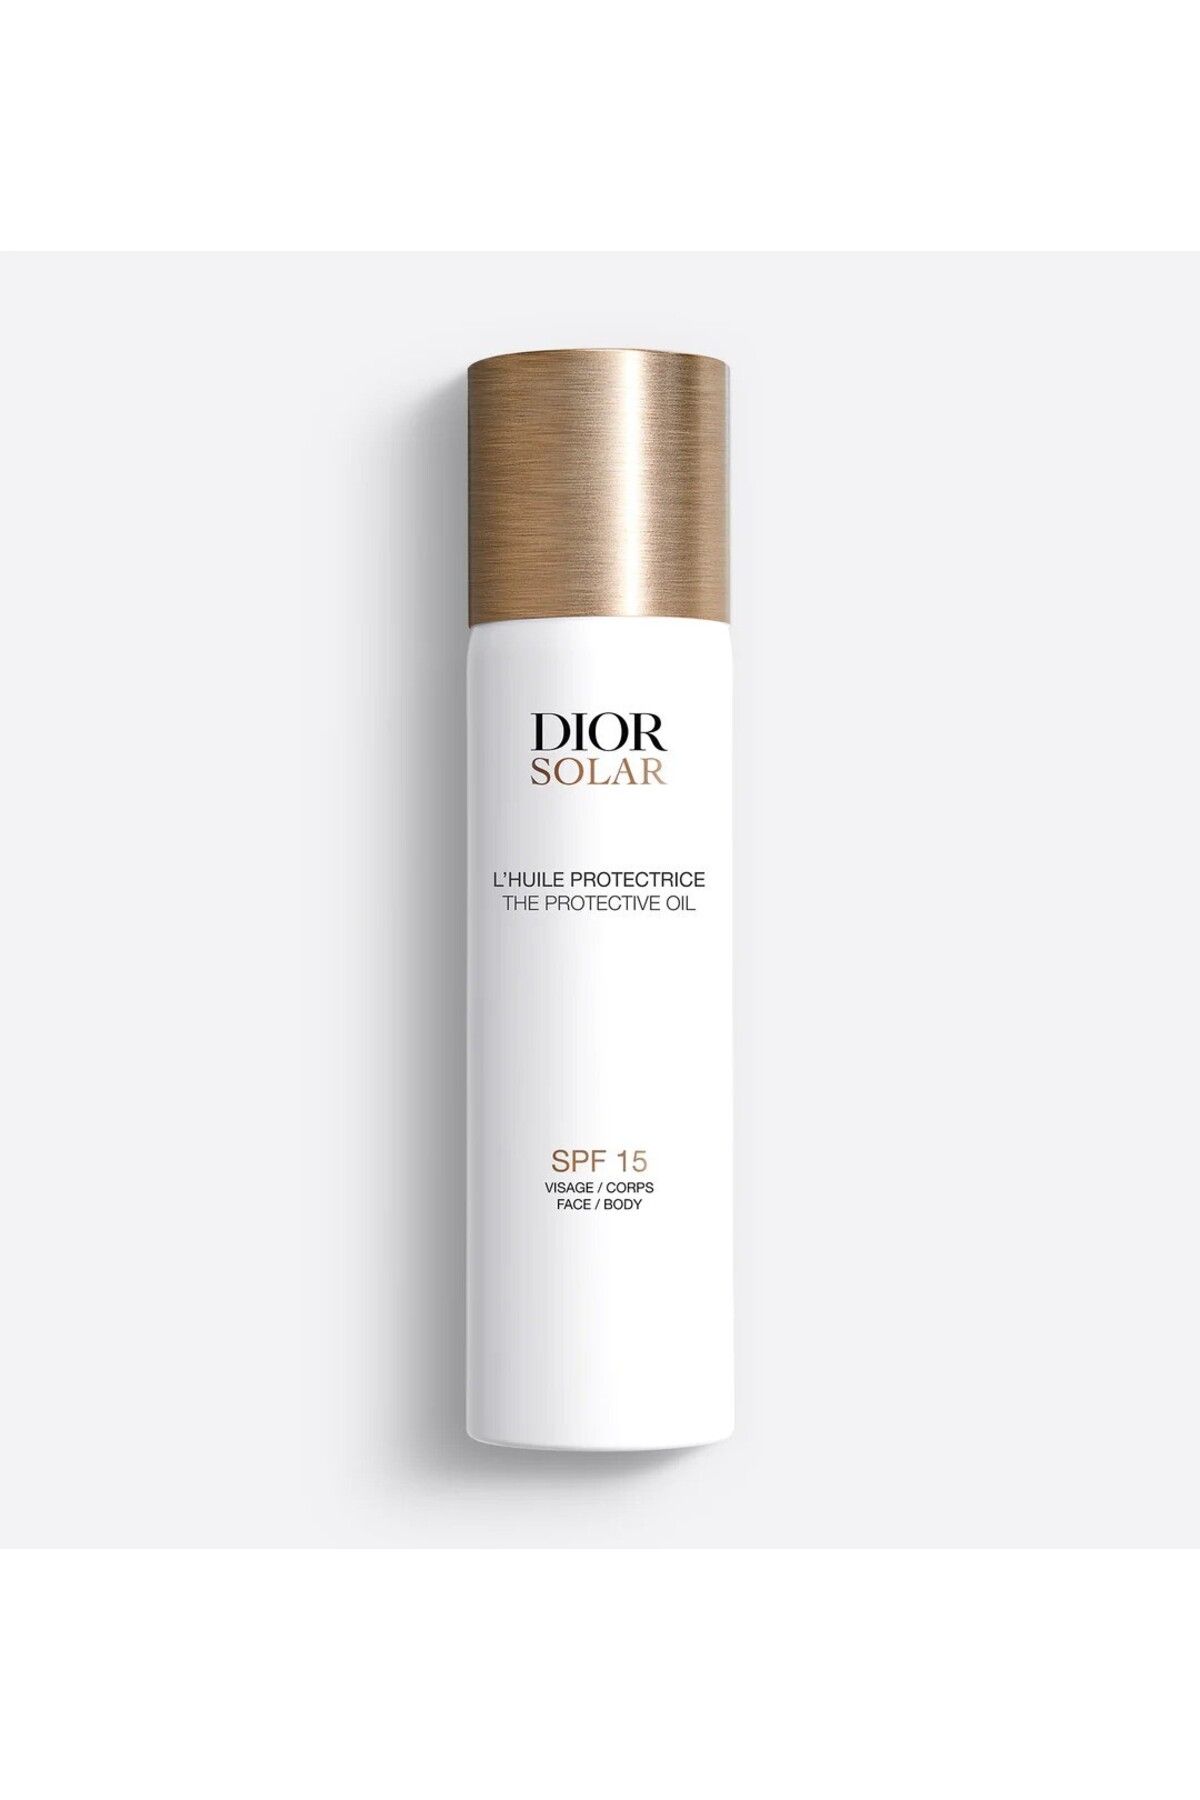 Dior Solar The Protective Oil SPF15 - Güneş Koruyucu Yüz ve Vücut Yağı-125ml